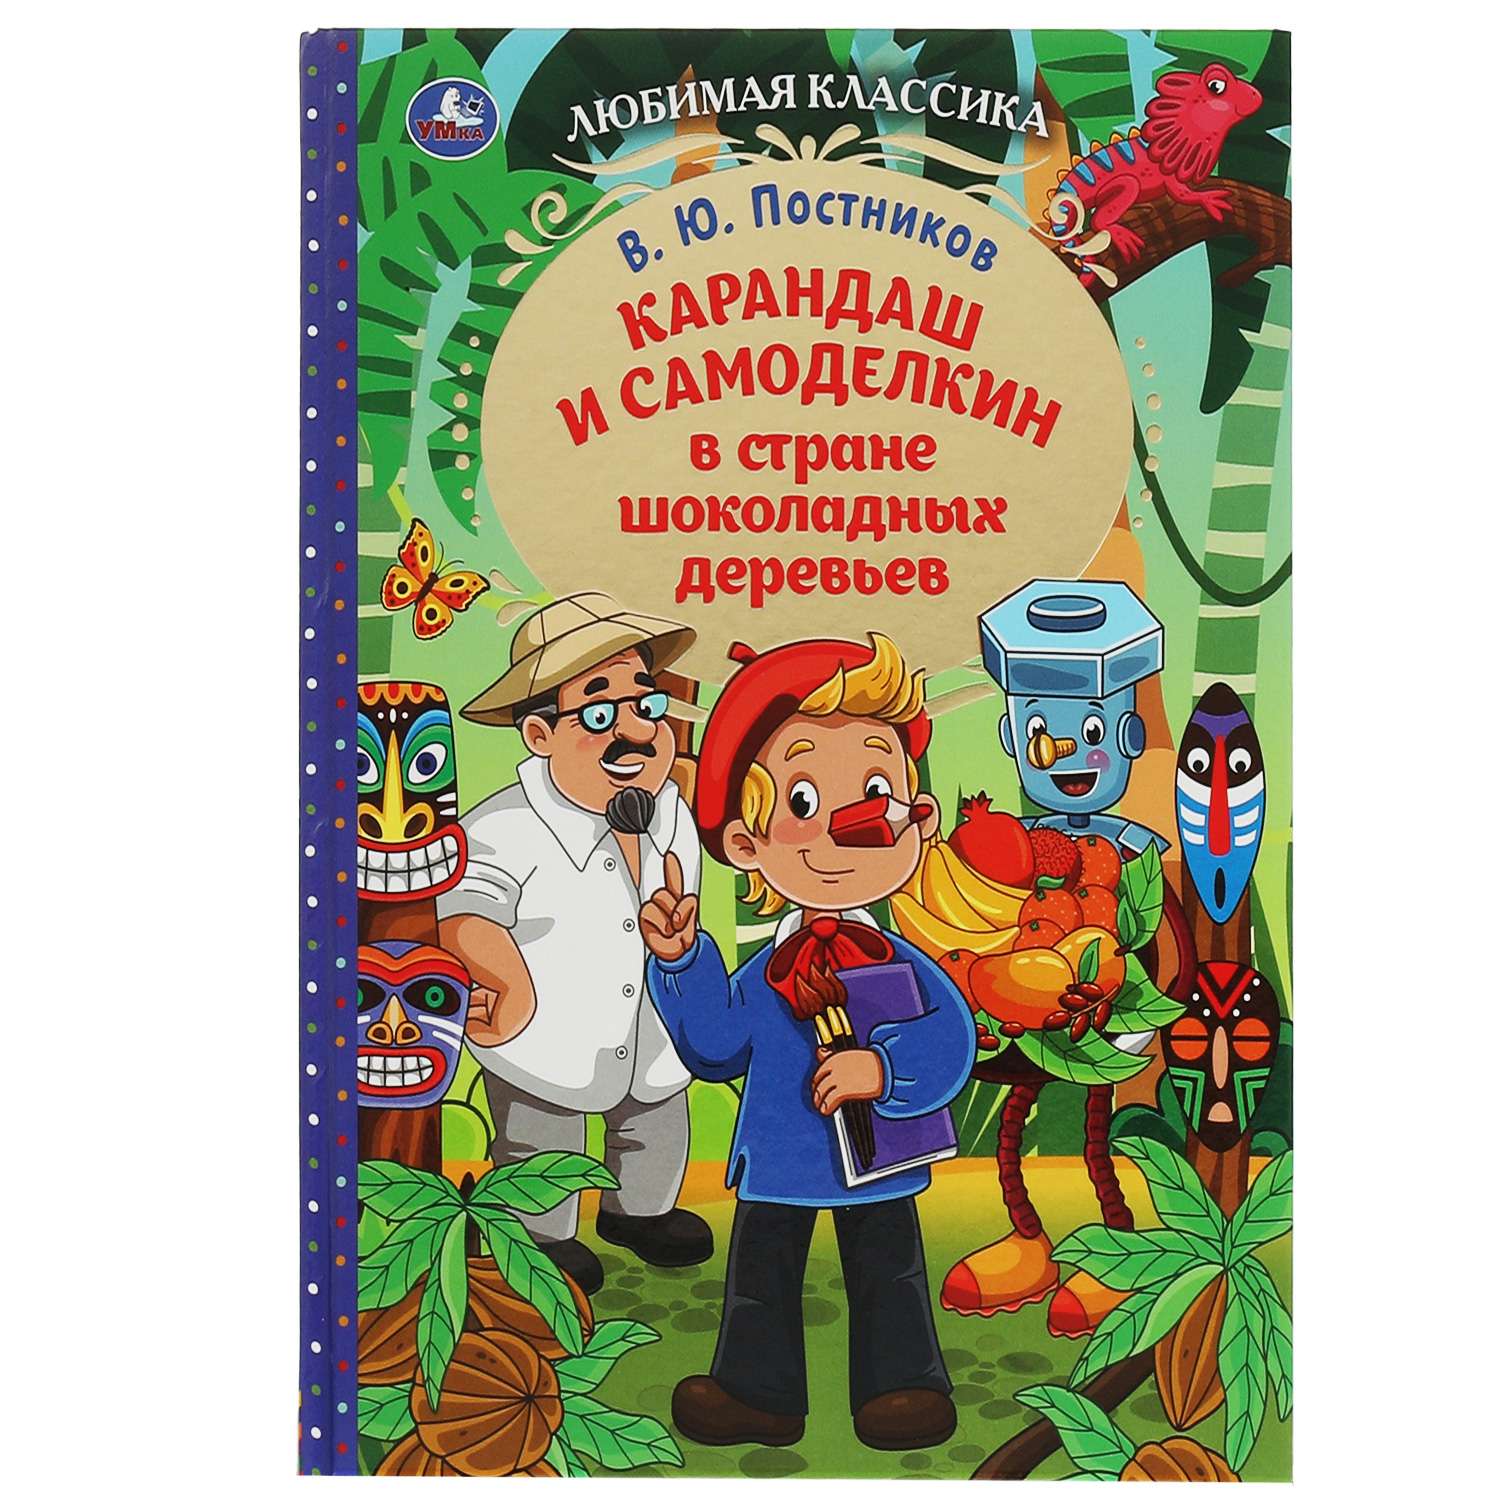 Книга Умка Карандаш и Самоделкин в стране шоколадных деревьев Постников 340416 - фото 1